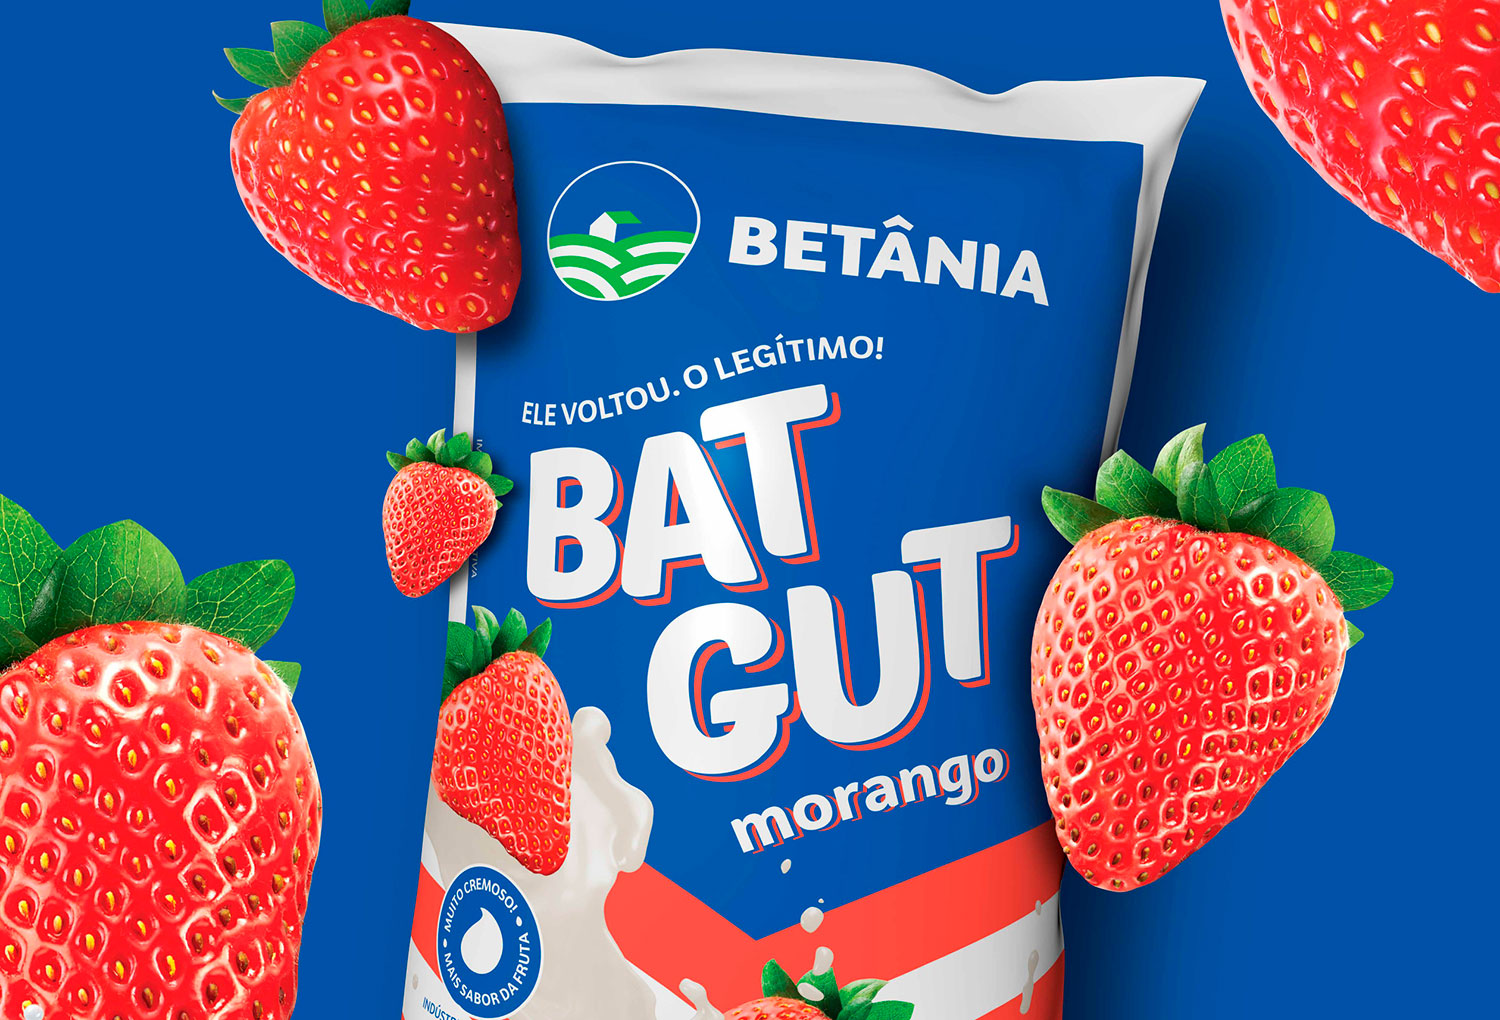 Ícone dos anos 1990, iogurte BatGut está de volta ao mercado; saiba mais